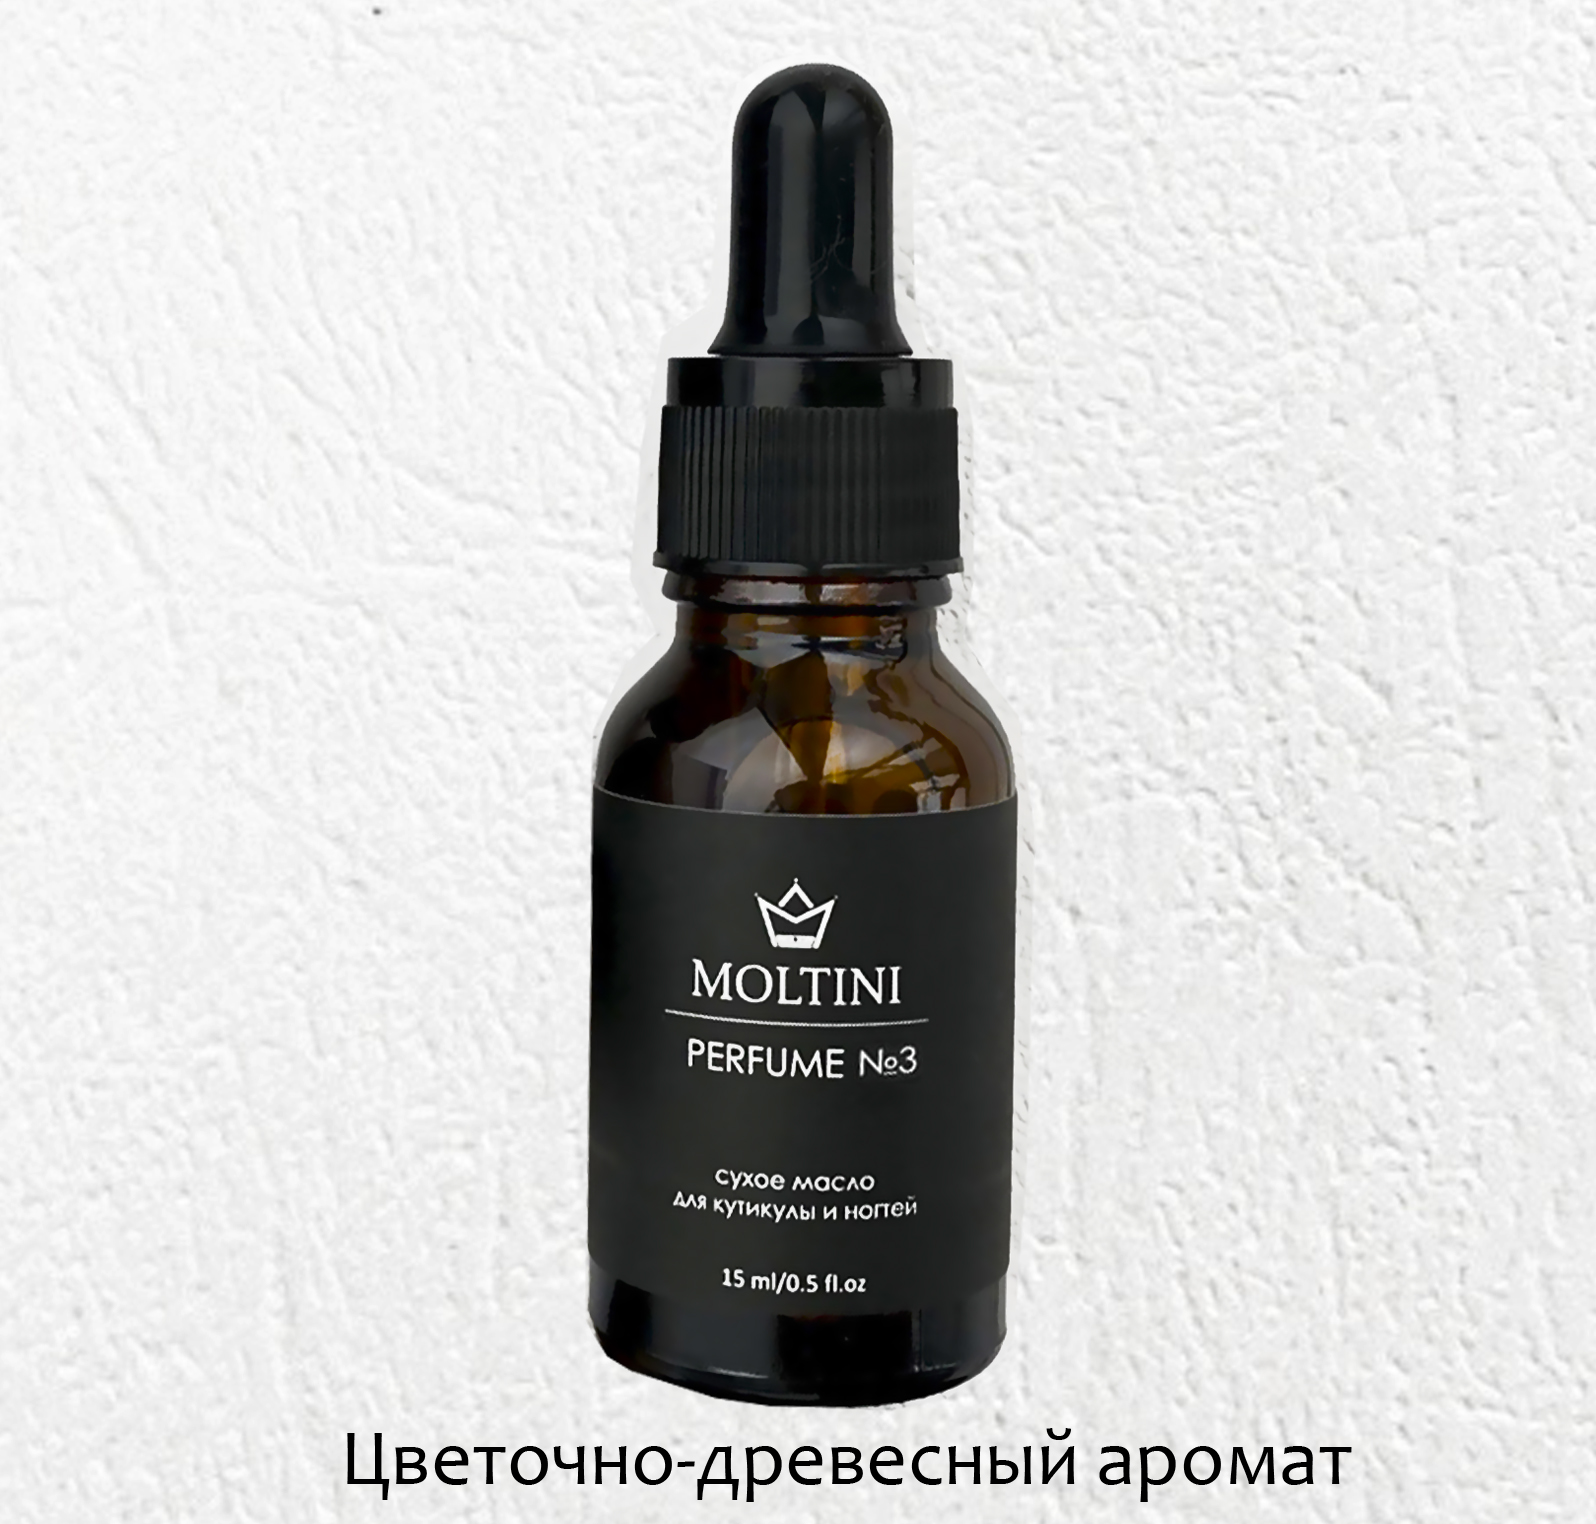 Сухое масло для кутикулы и ногтей "Moltini", аромат № 3 (цветочно-древесный), 15 мл